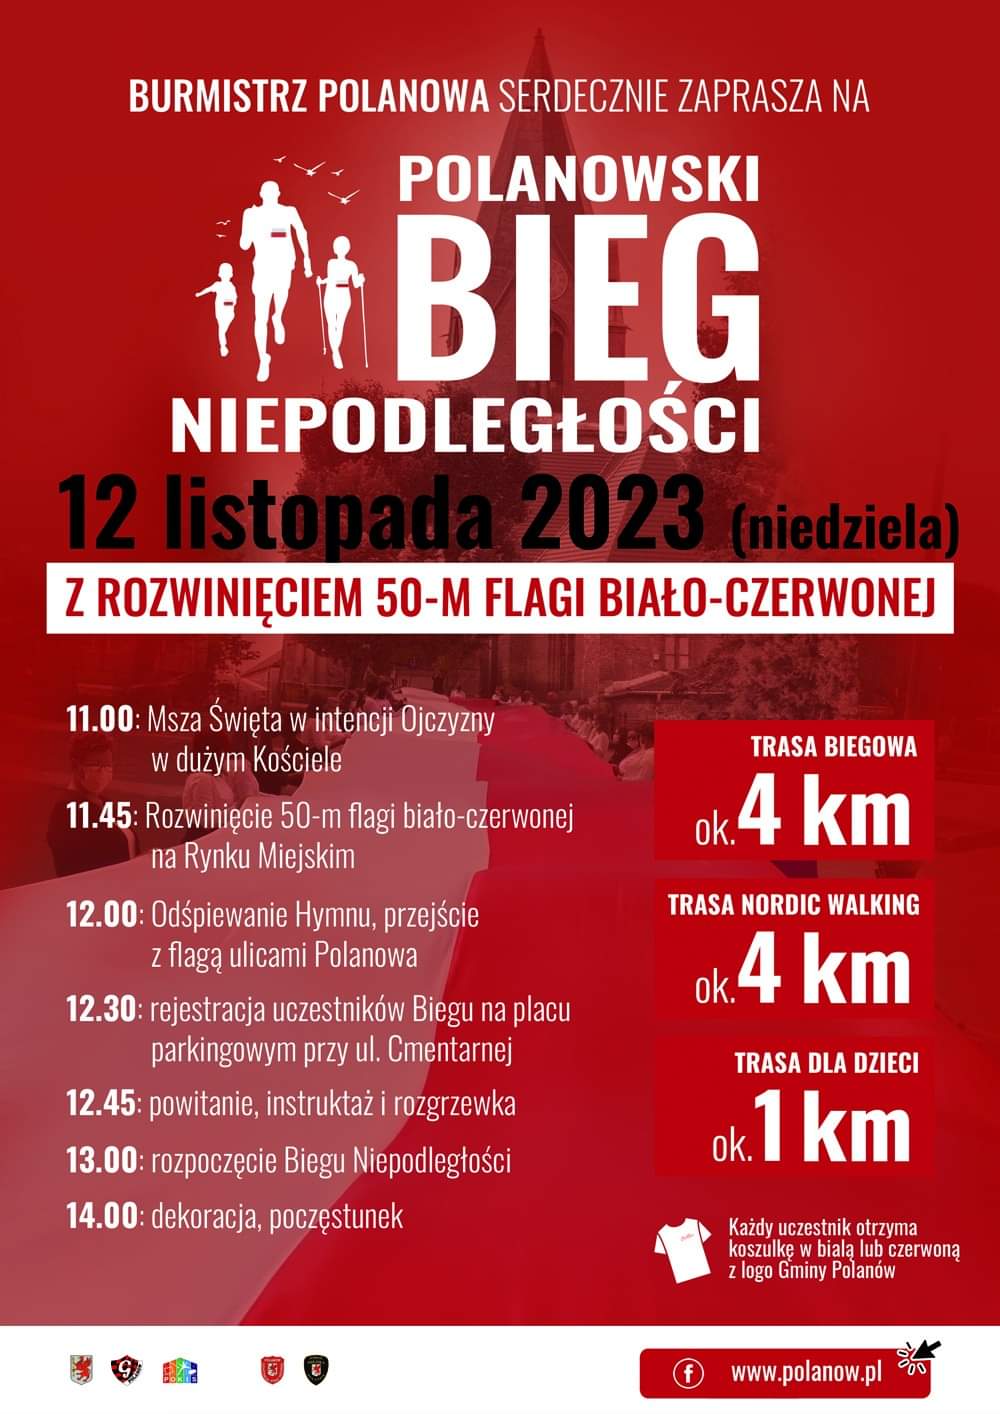 Plakat z zaproszeniem na polanowski bieg niepodległości 12 listopada 2023 w Polanowie